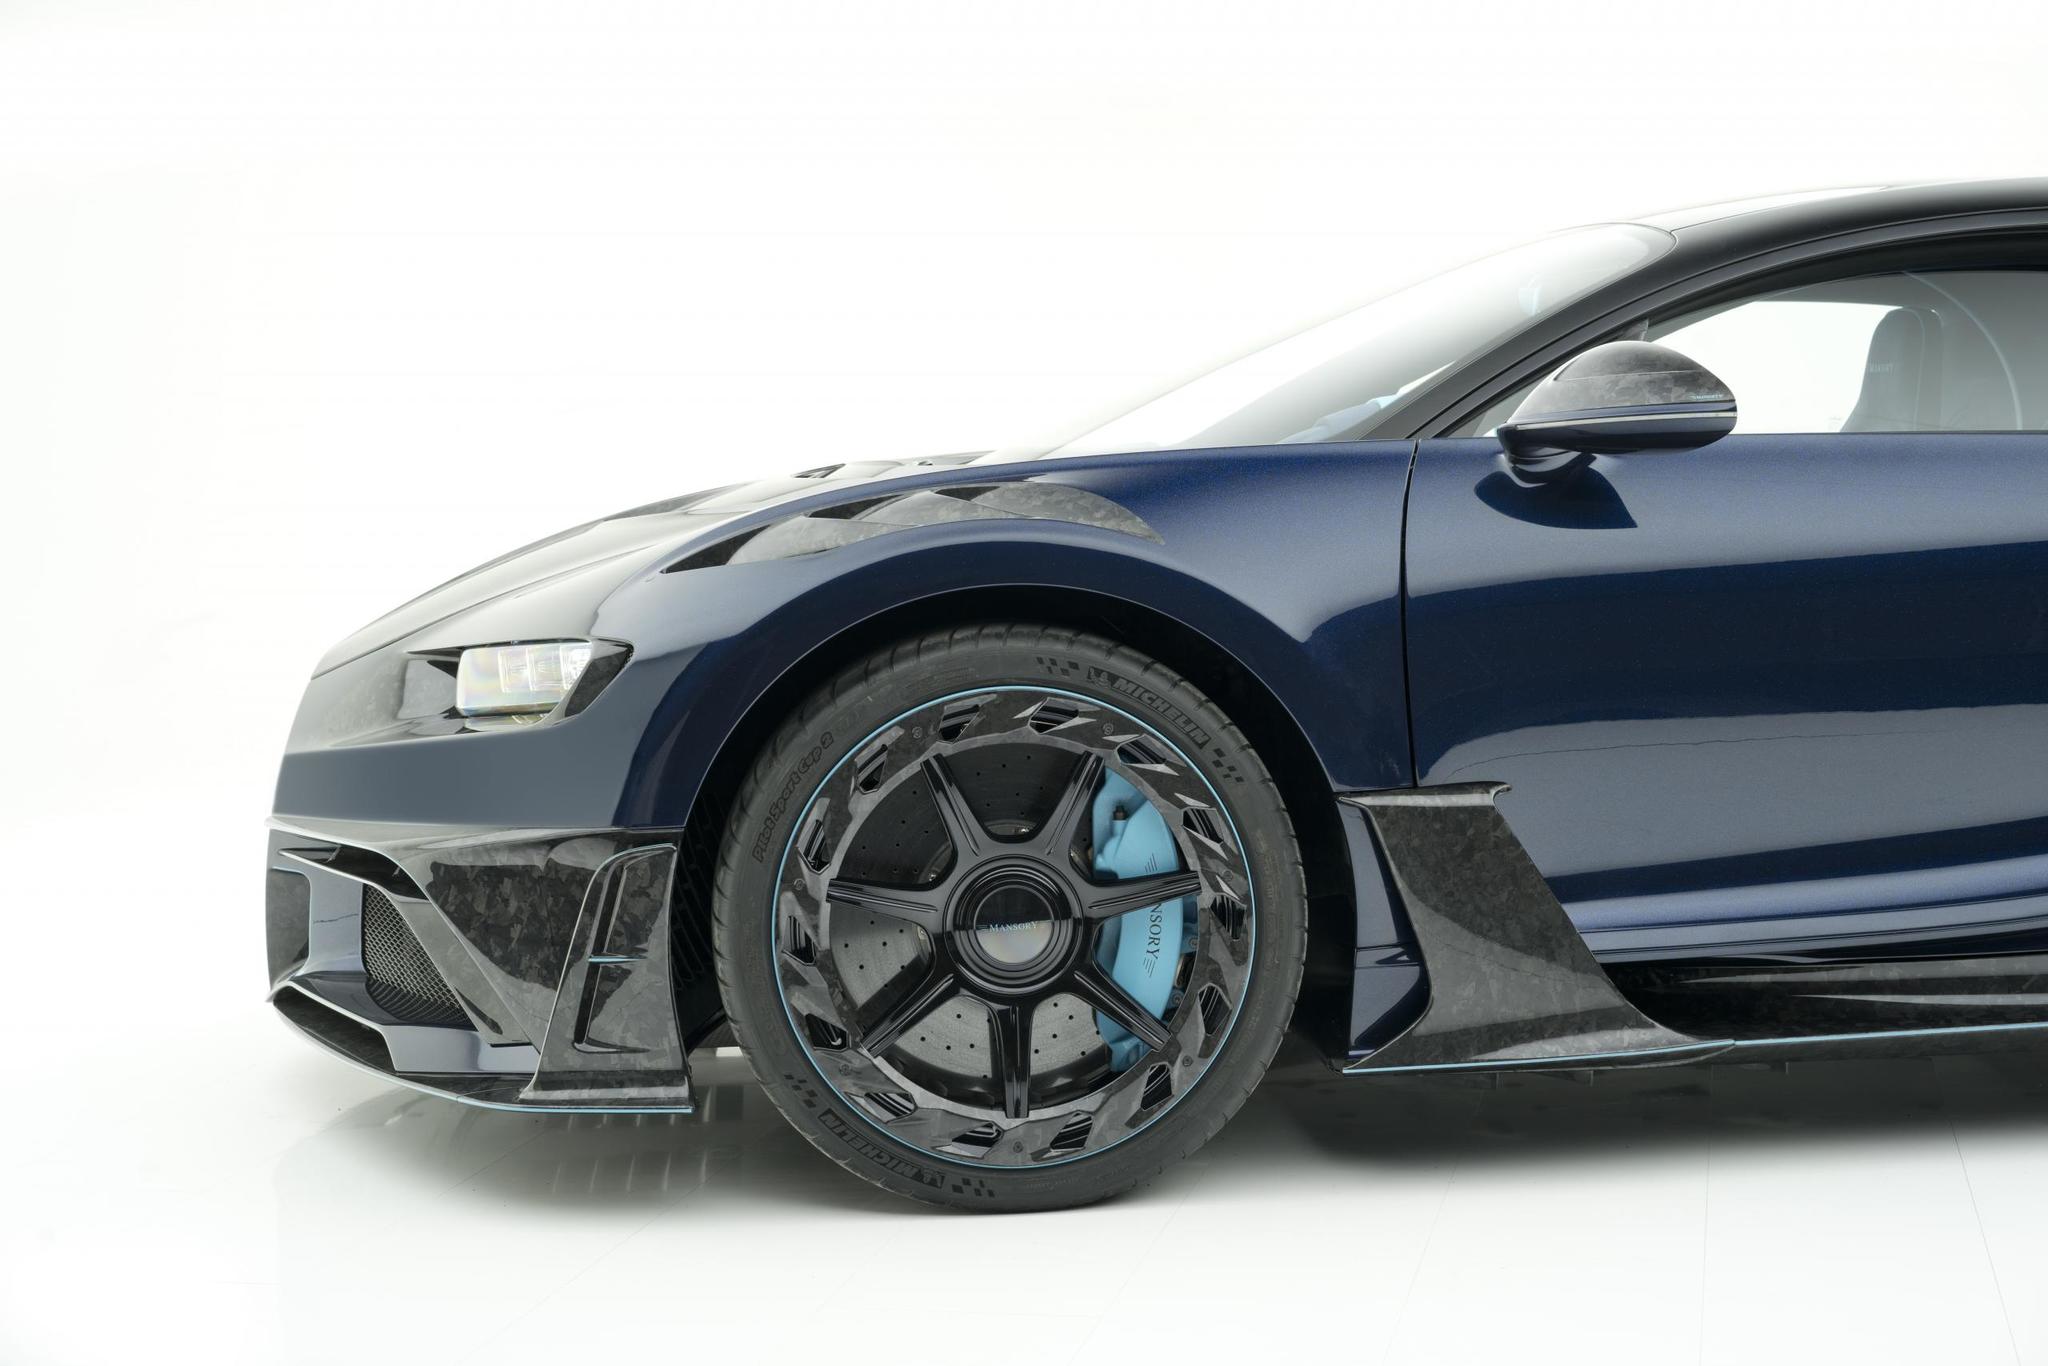 Mansory body kit for Bugatti Chiron latest model